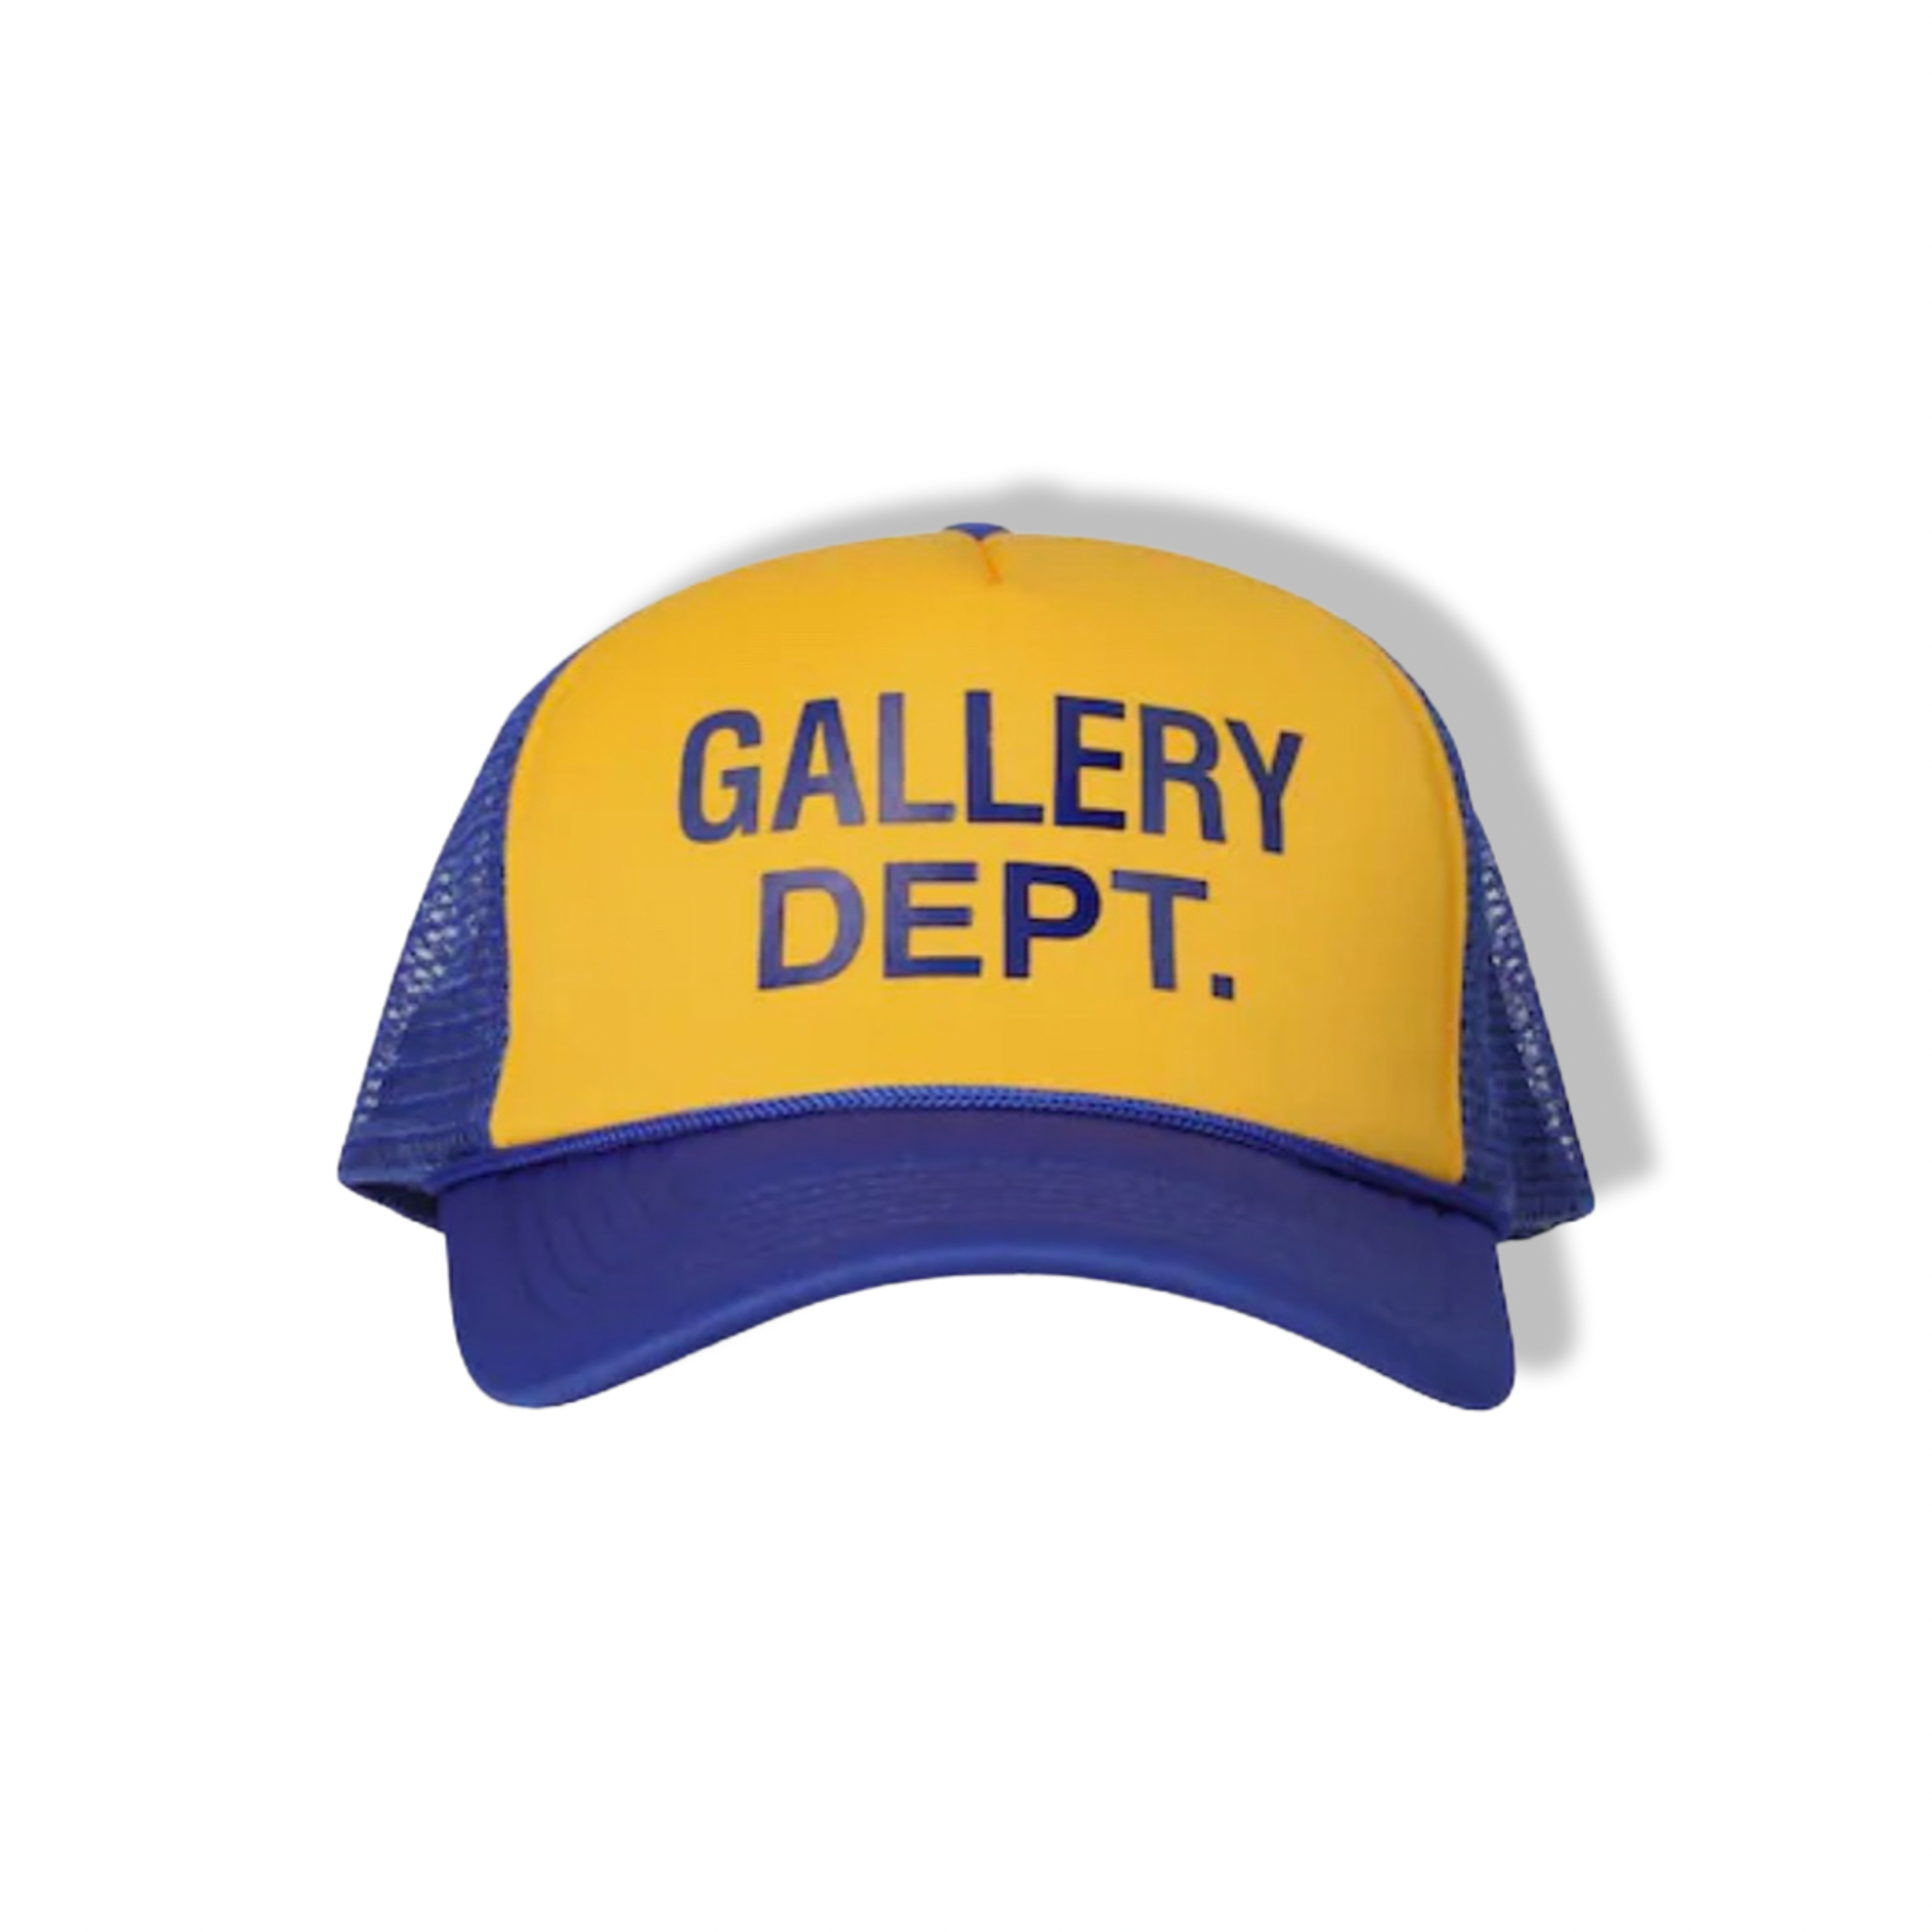 Gallery Dept. Trucker Hat